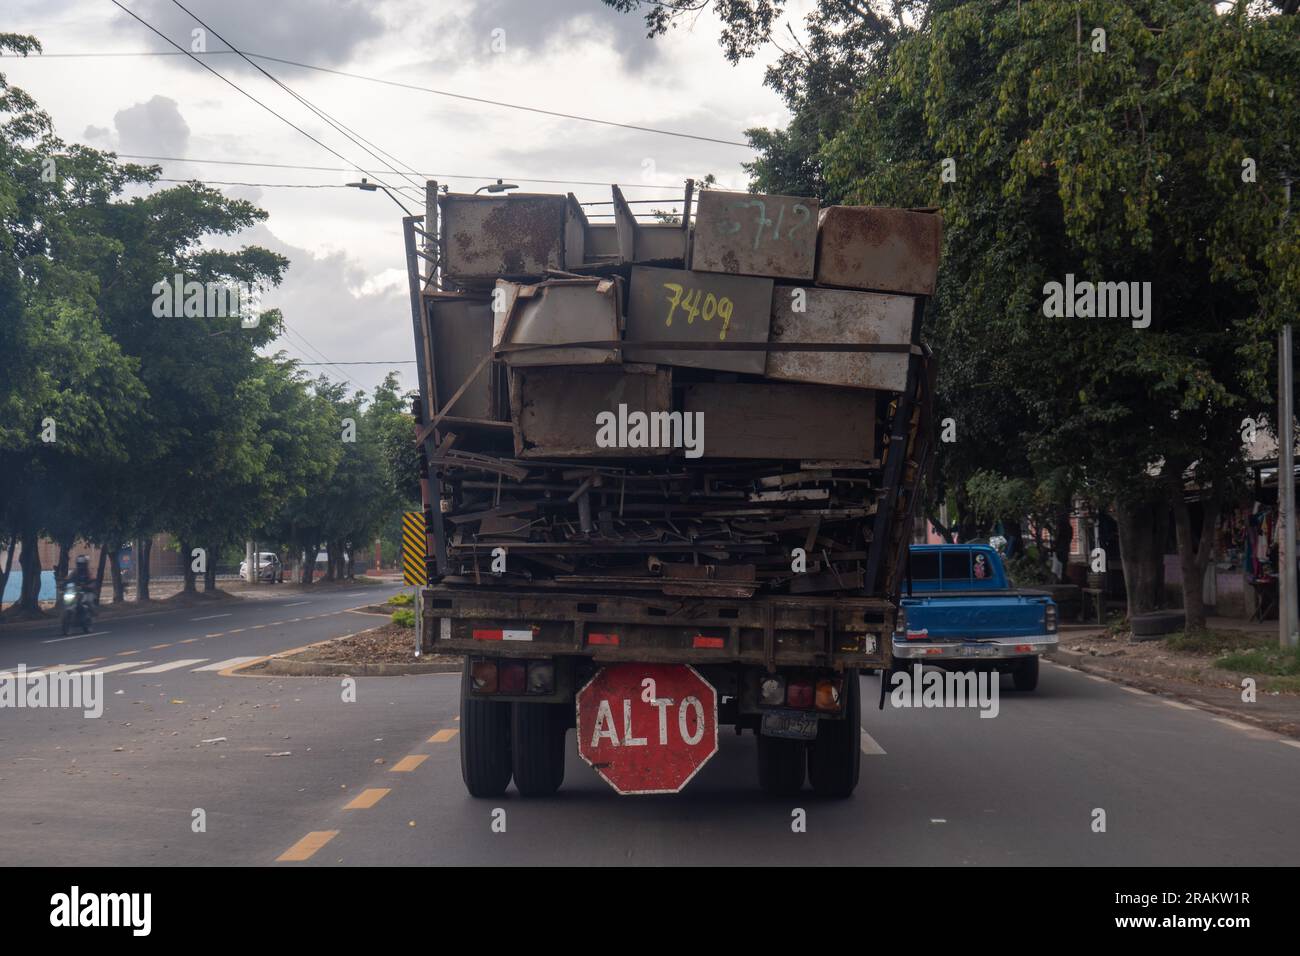 Ahuachapán, El Salvador - 14 novembre 2022: Camion sull'autostrada che trasporta molti mobili in ferro arrugginito con un grande cartello che dice "Stop" Foto Stock